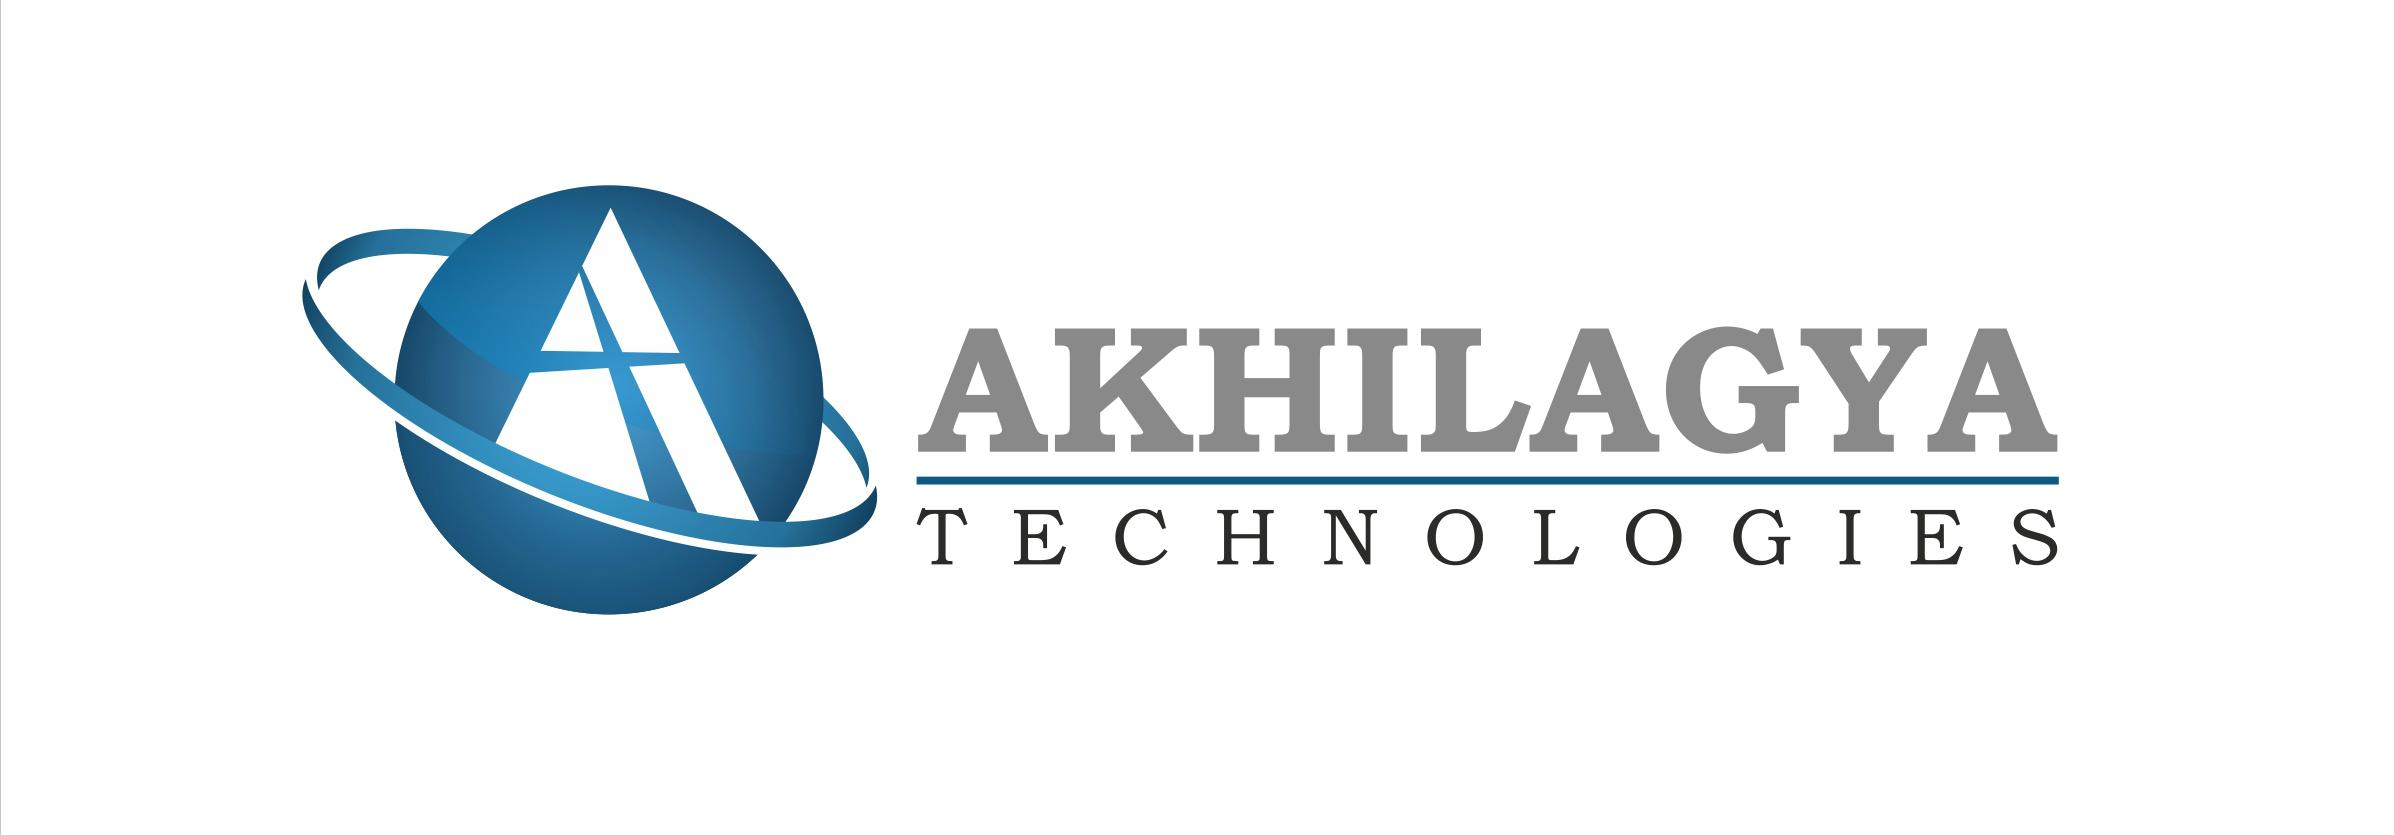 Akhilagya Technology